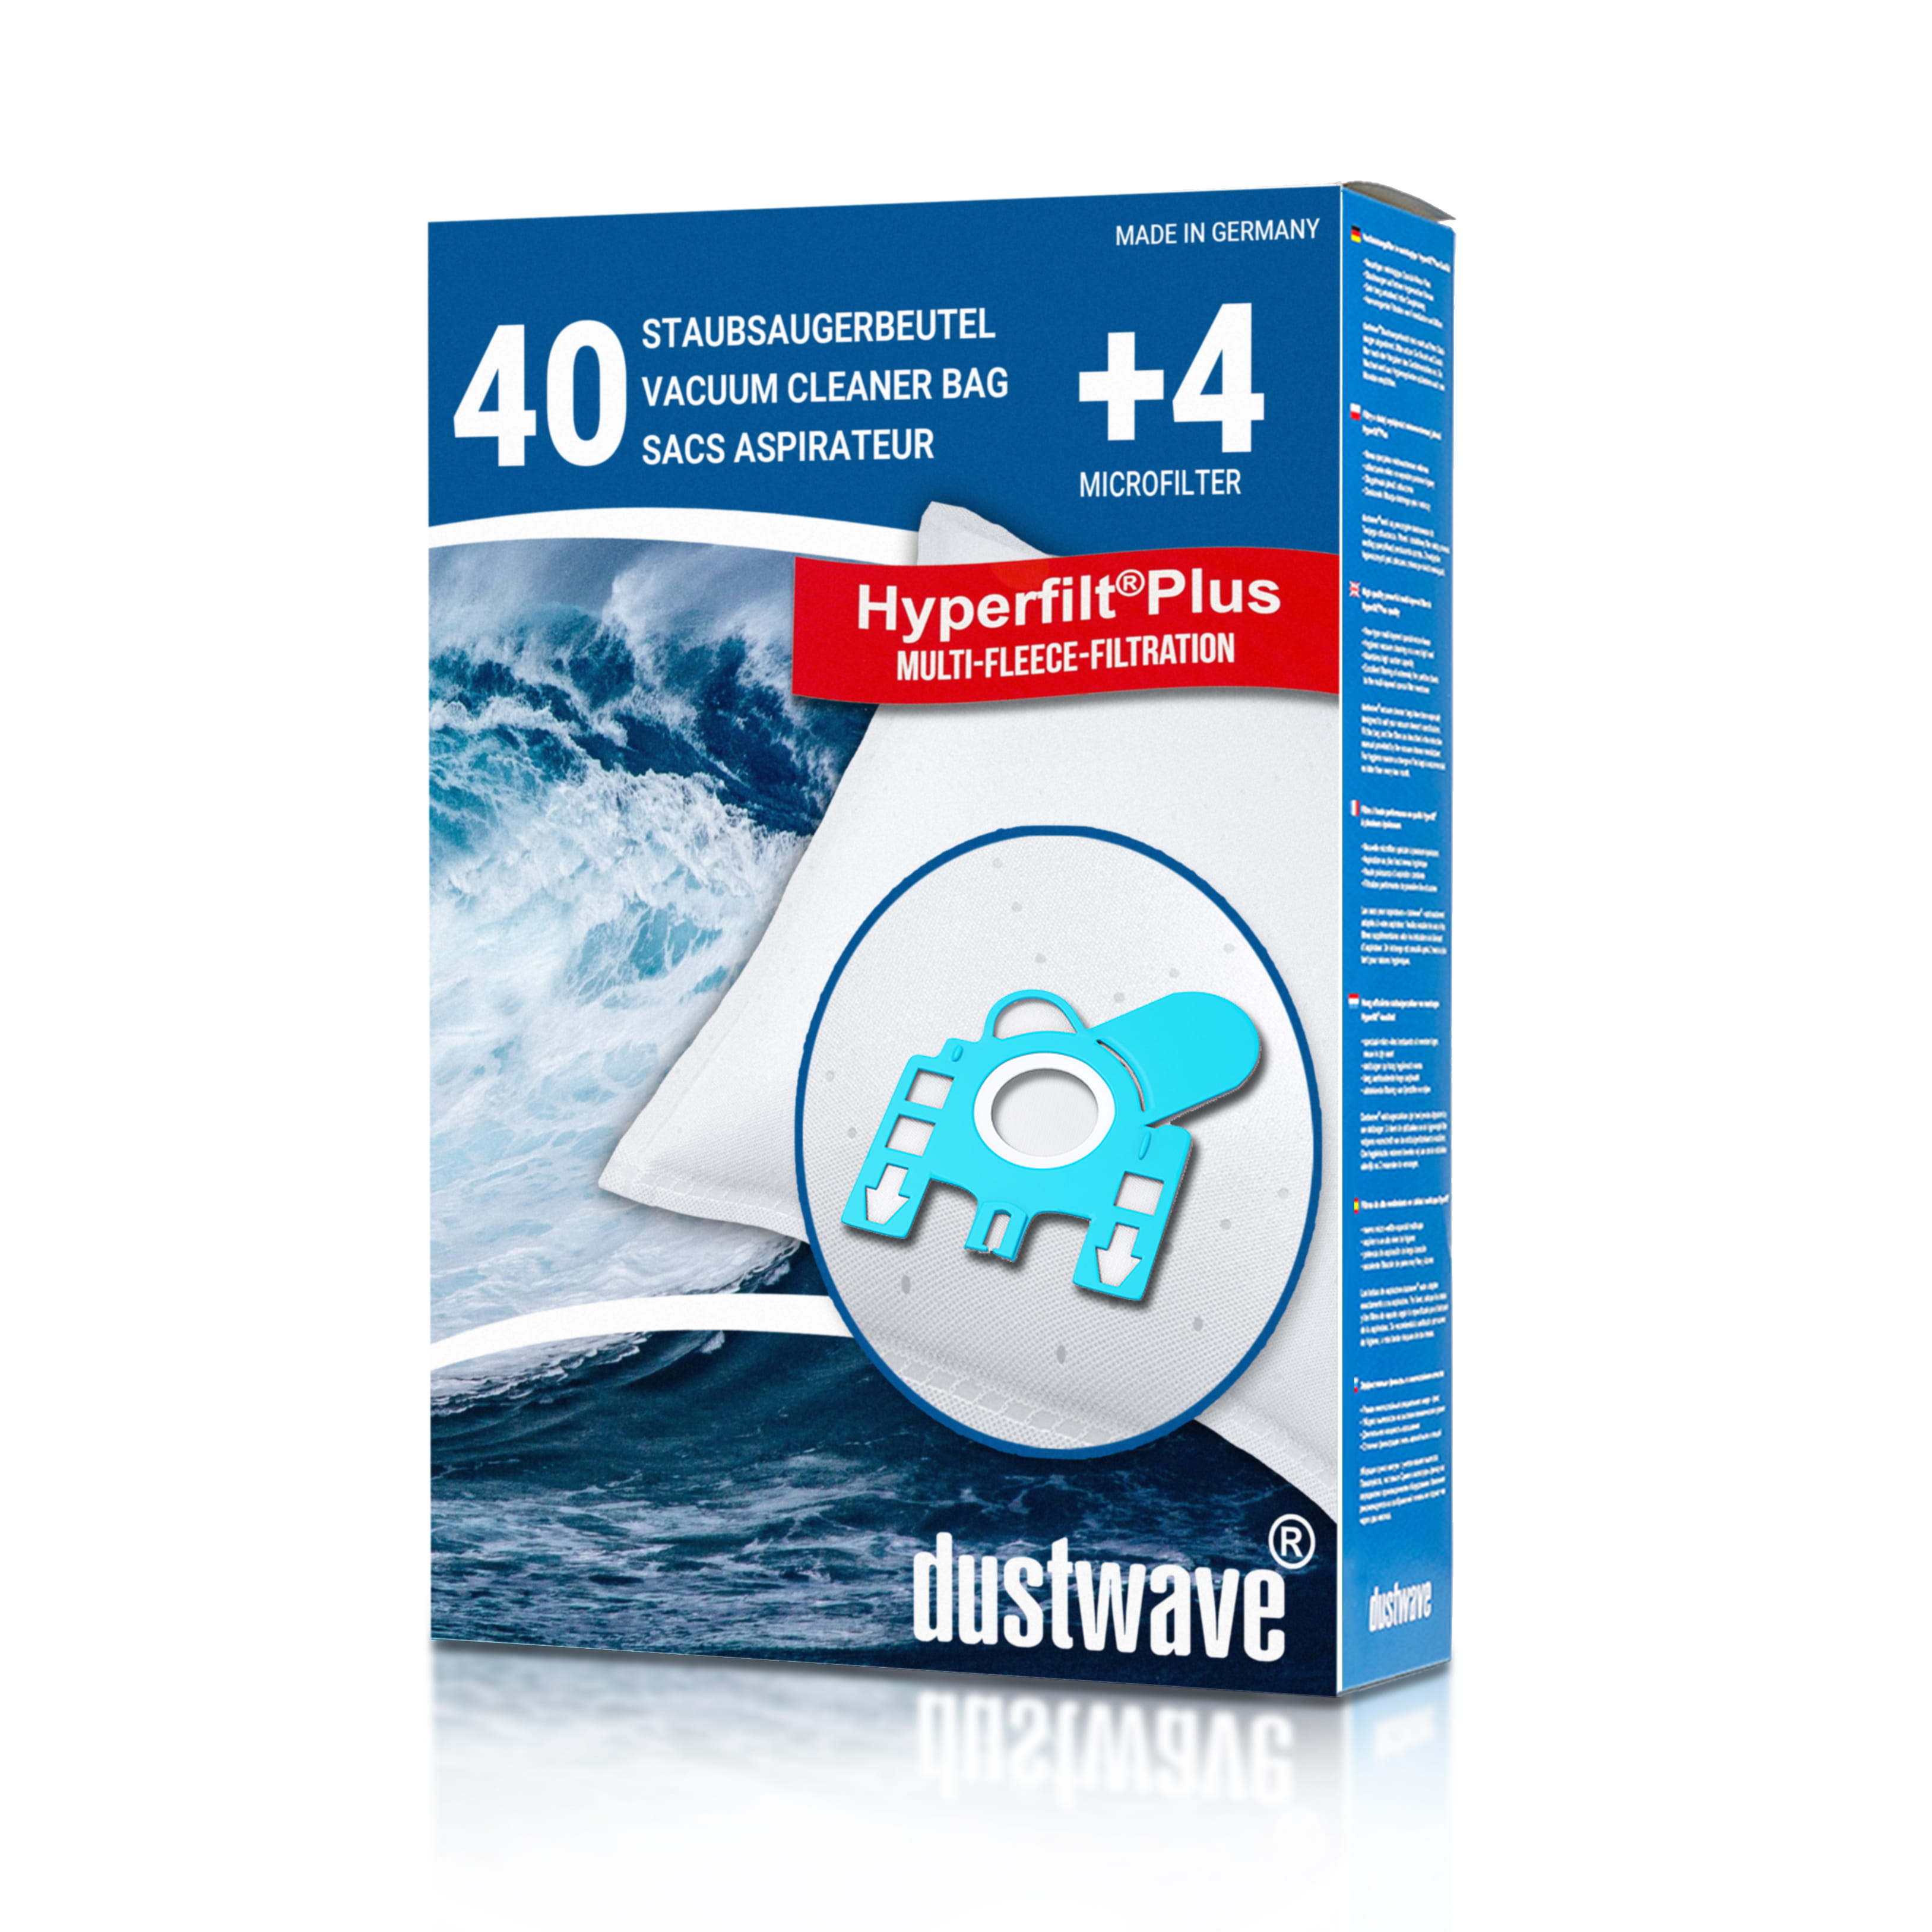 Dustwave® 40 Staubsaugerbeutel für SWIRL H 30 - hocheffizient, mehrlagiges Mikrovlies mit Hygieneverschluss - Made in Germany